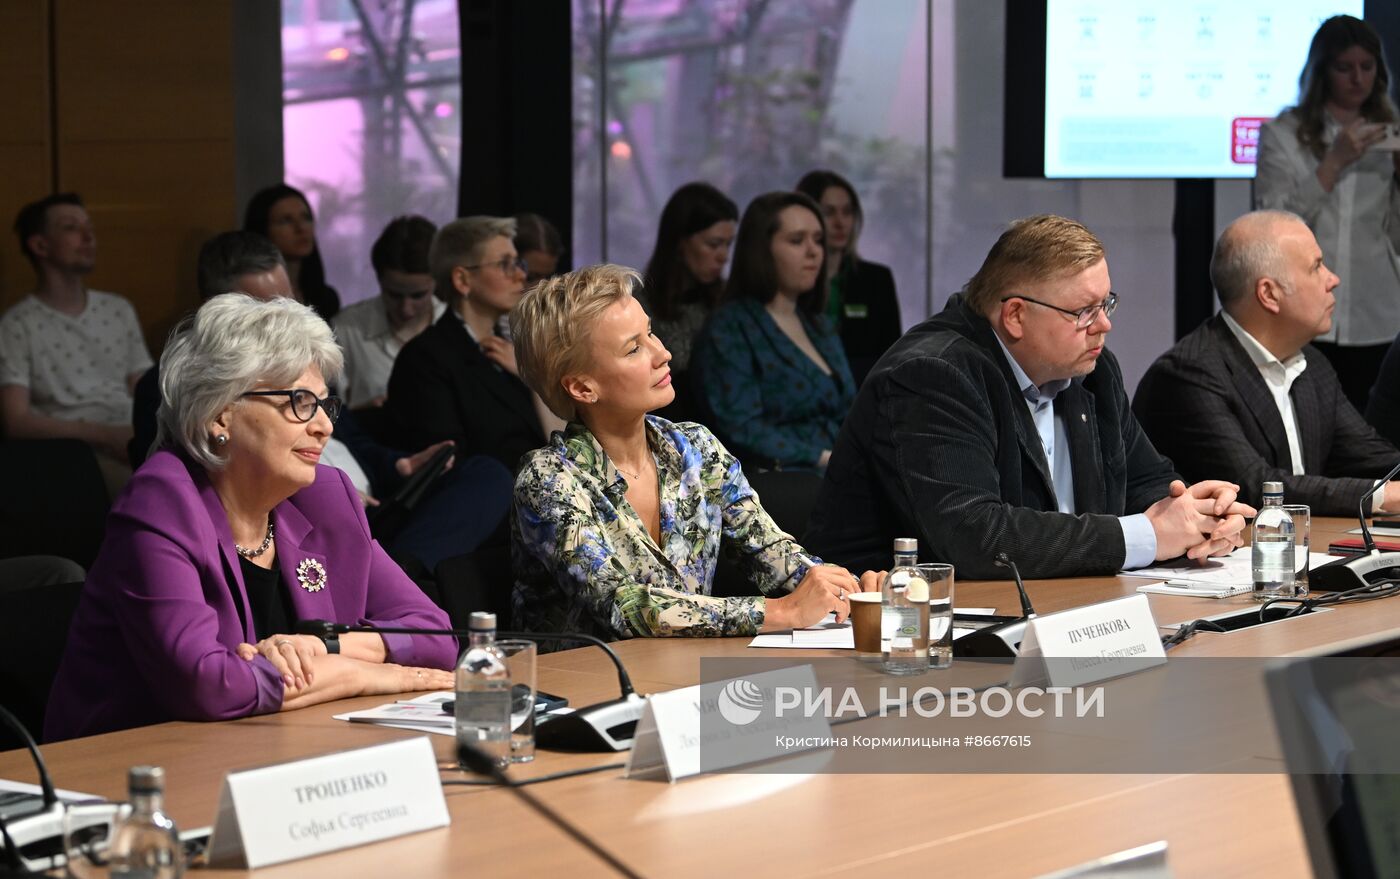 Расширенное заседание Комиссии по культуре и культурно-историческому наследию Общественной палаты города Москвы 